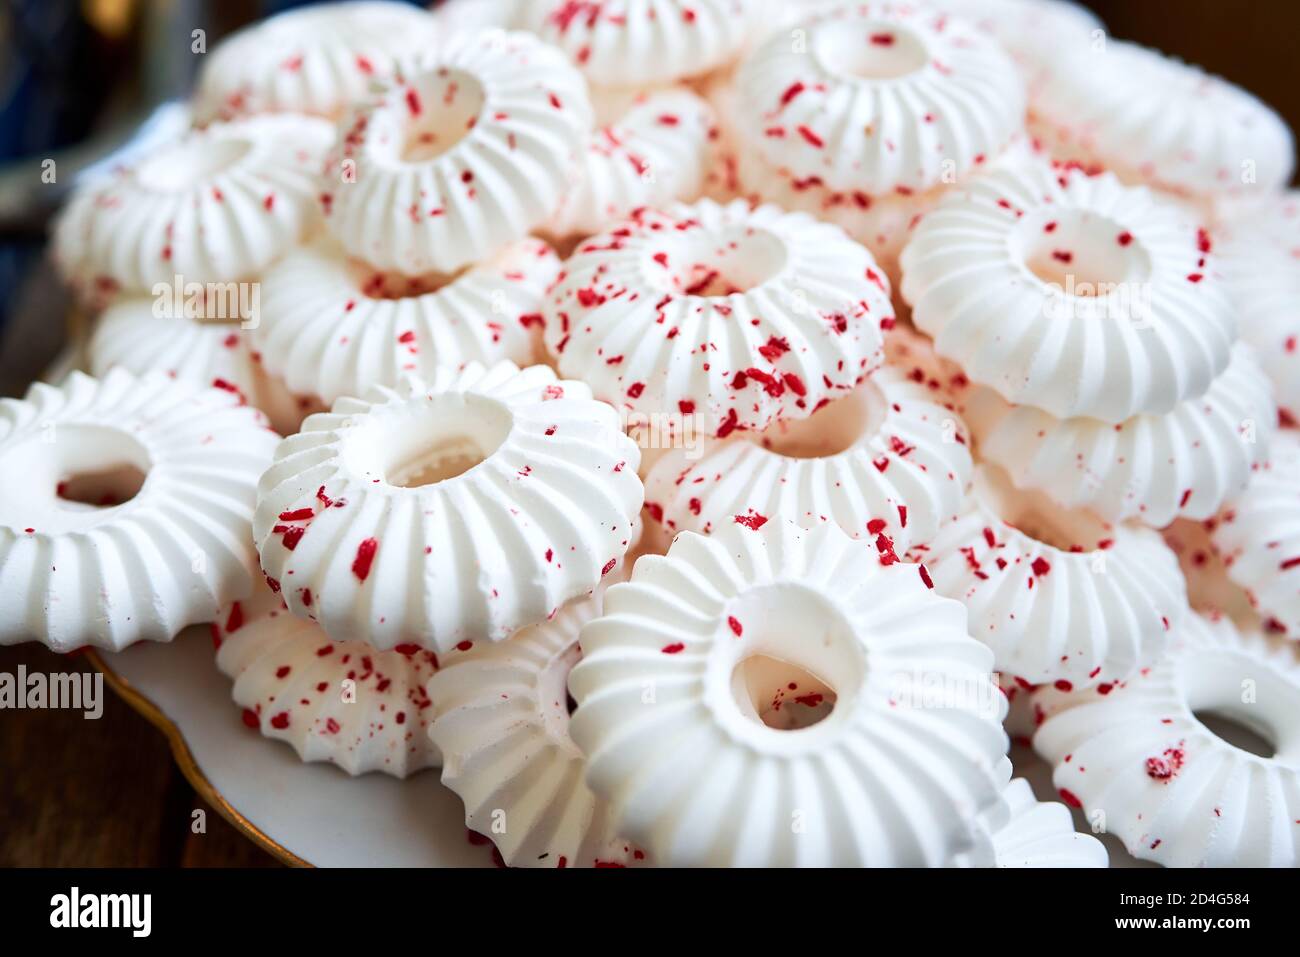 Hintergrund von weißen Baiser Kuchen mit roten Gebäck Krümel bestreut Stockfoto